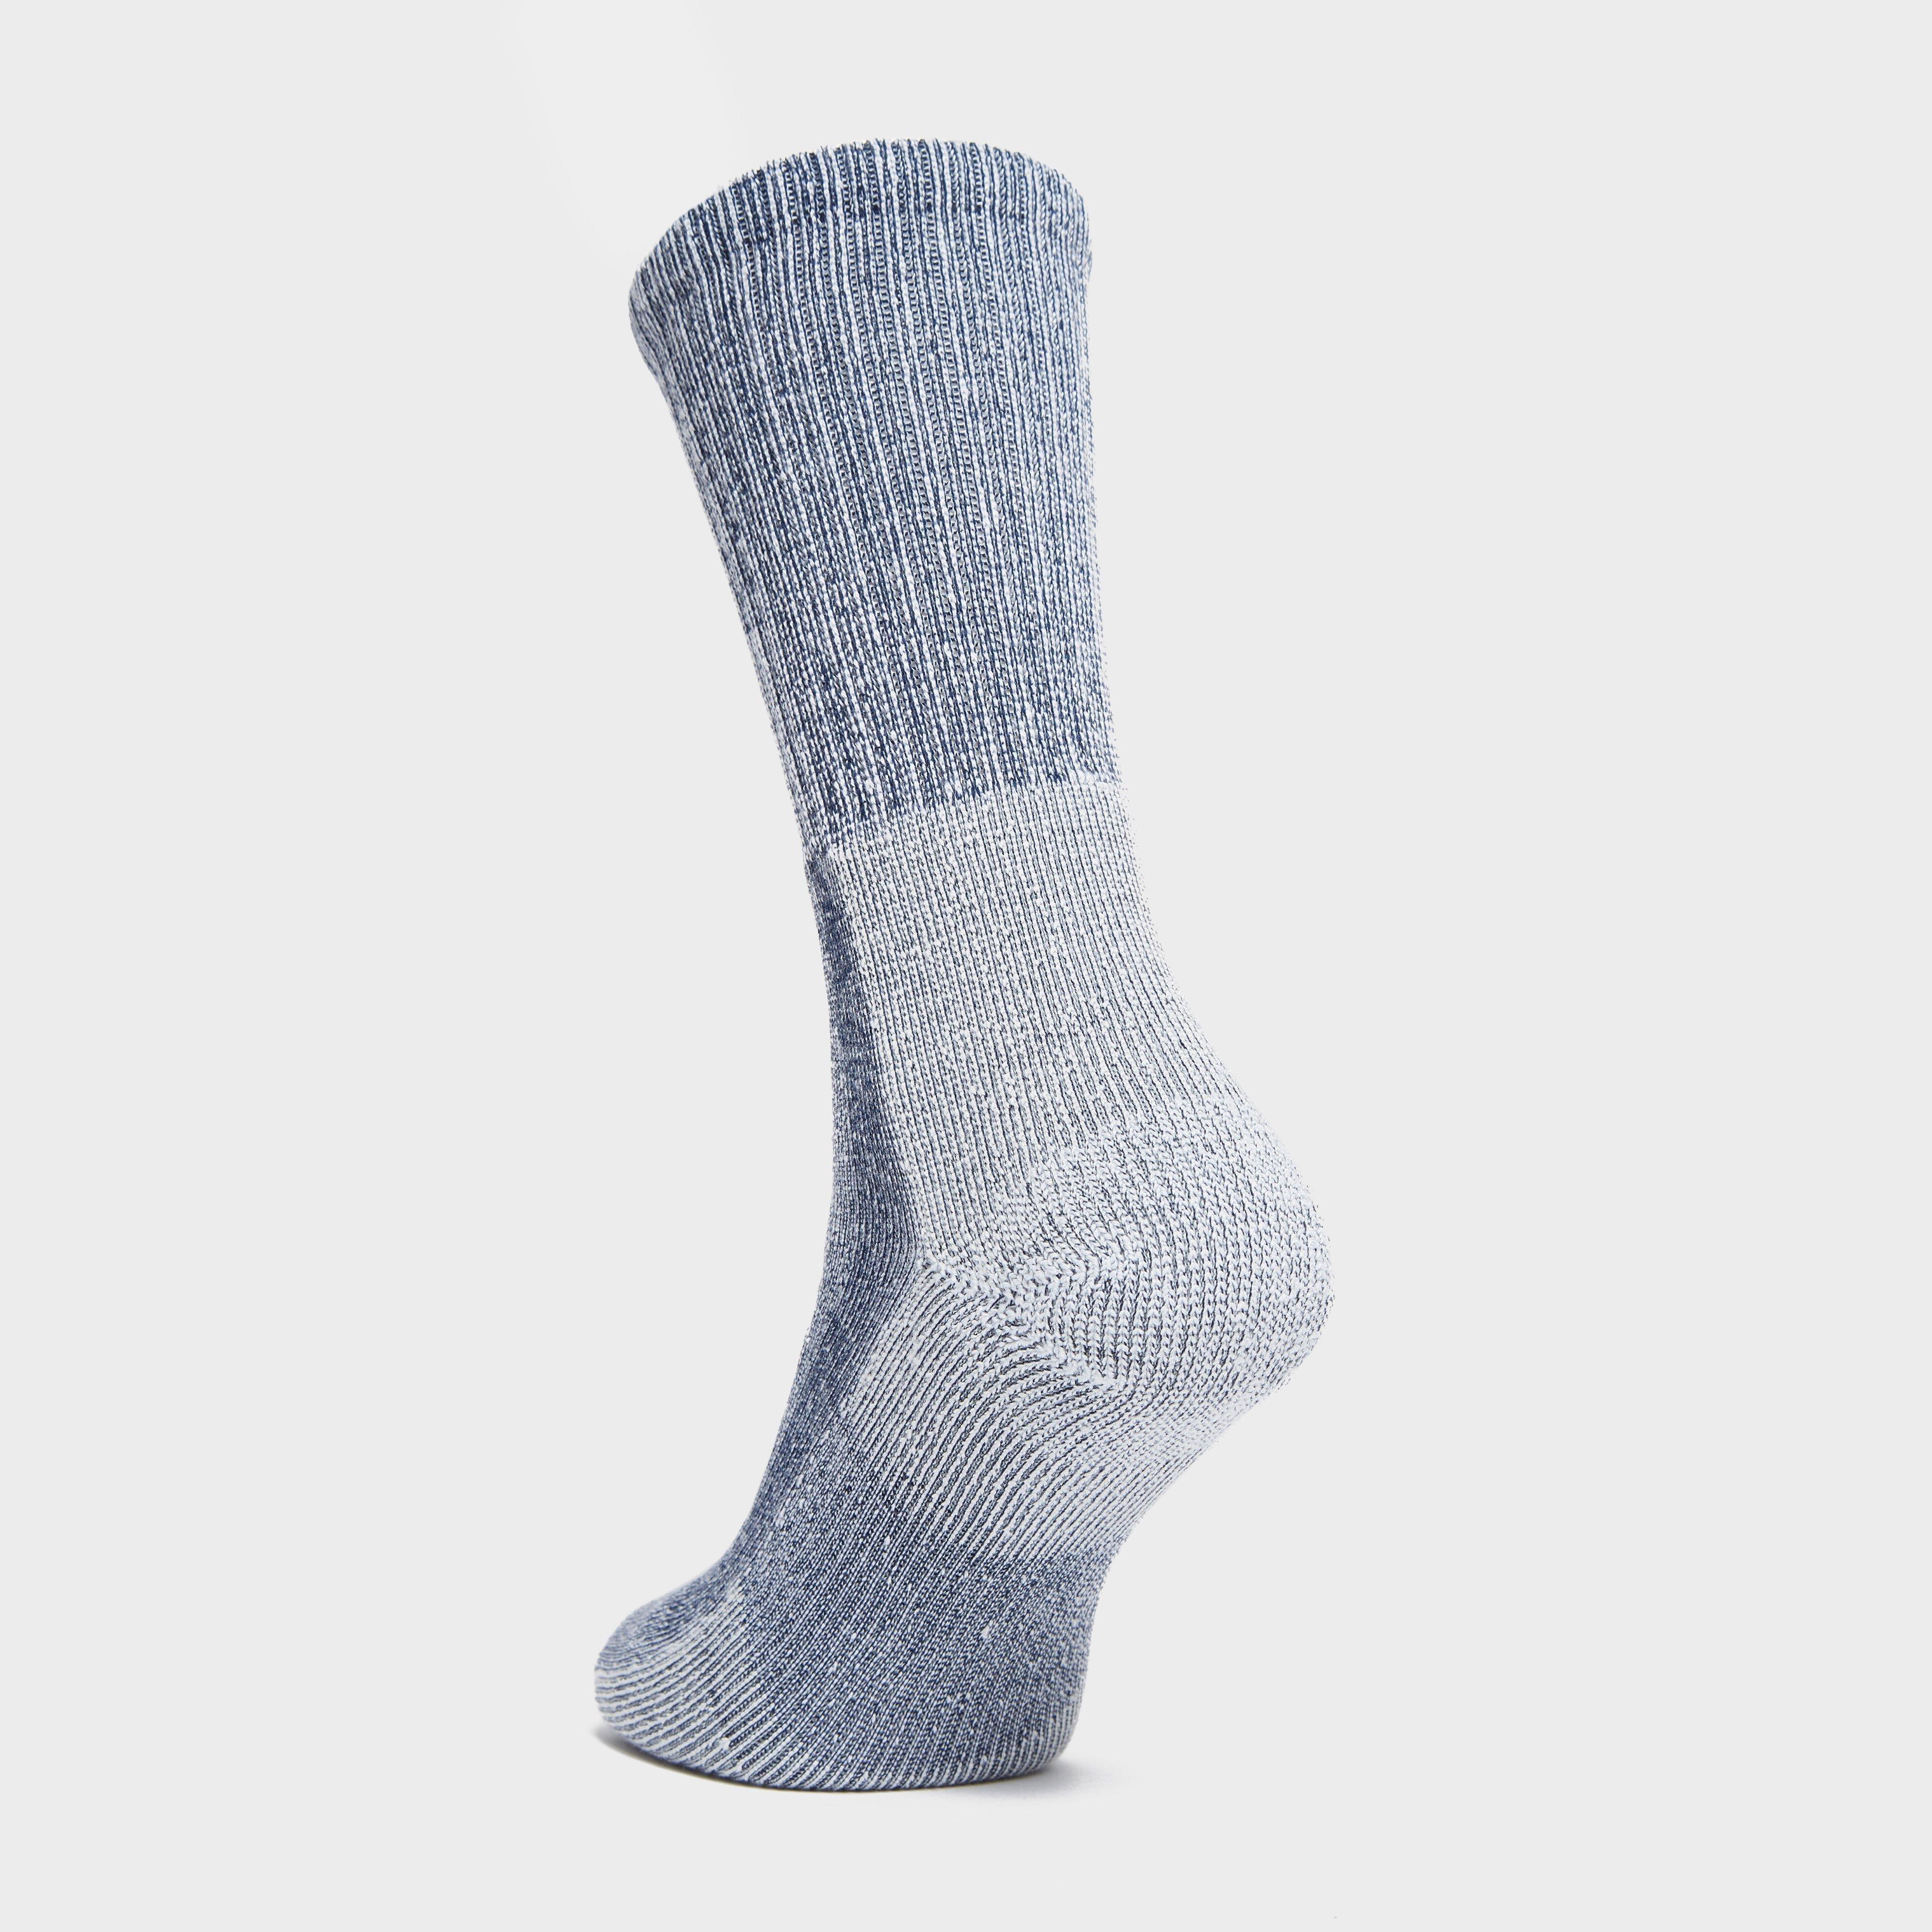 Thorlo Men's Light Hiker Socks Review